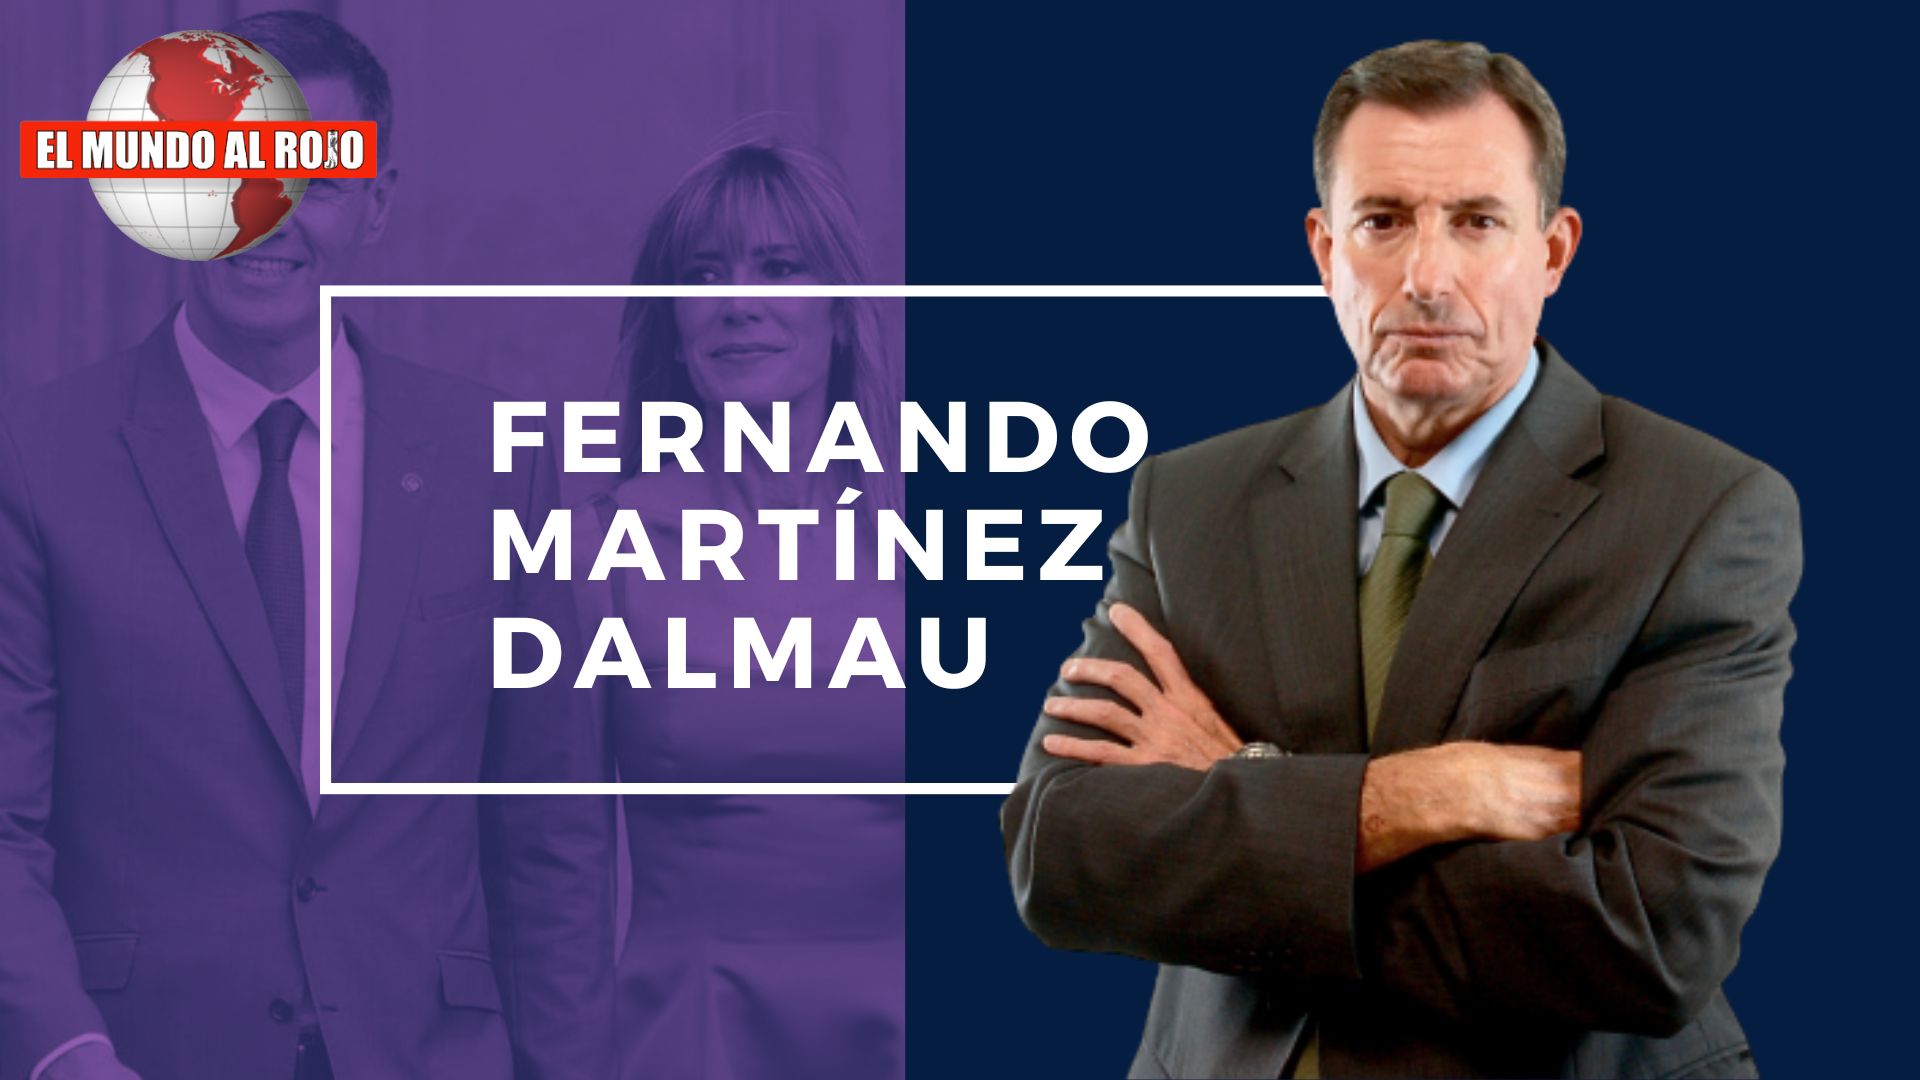 FERNANDO MARTÍNEZ-DALMAU